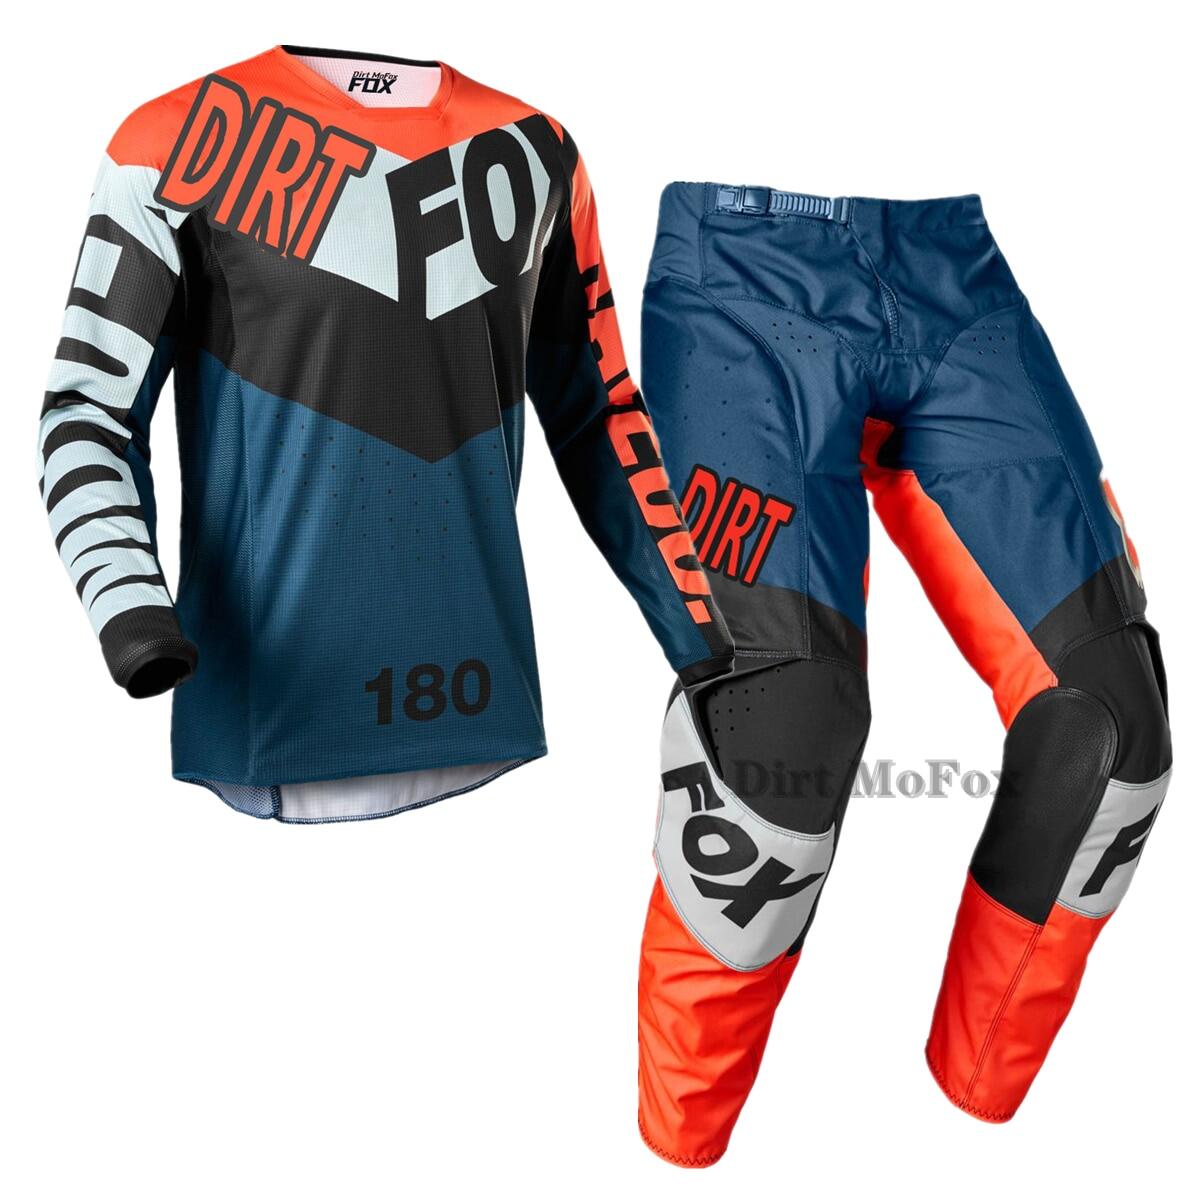 Dirt Mofox MX Jersey Và Bộ quần Motocross Phù Hợp Với xe đạp leo núi Xe